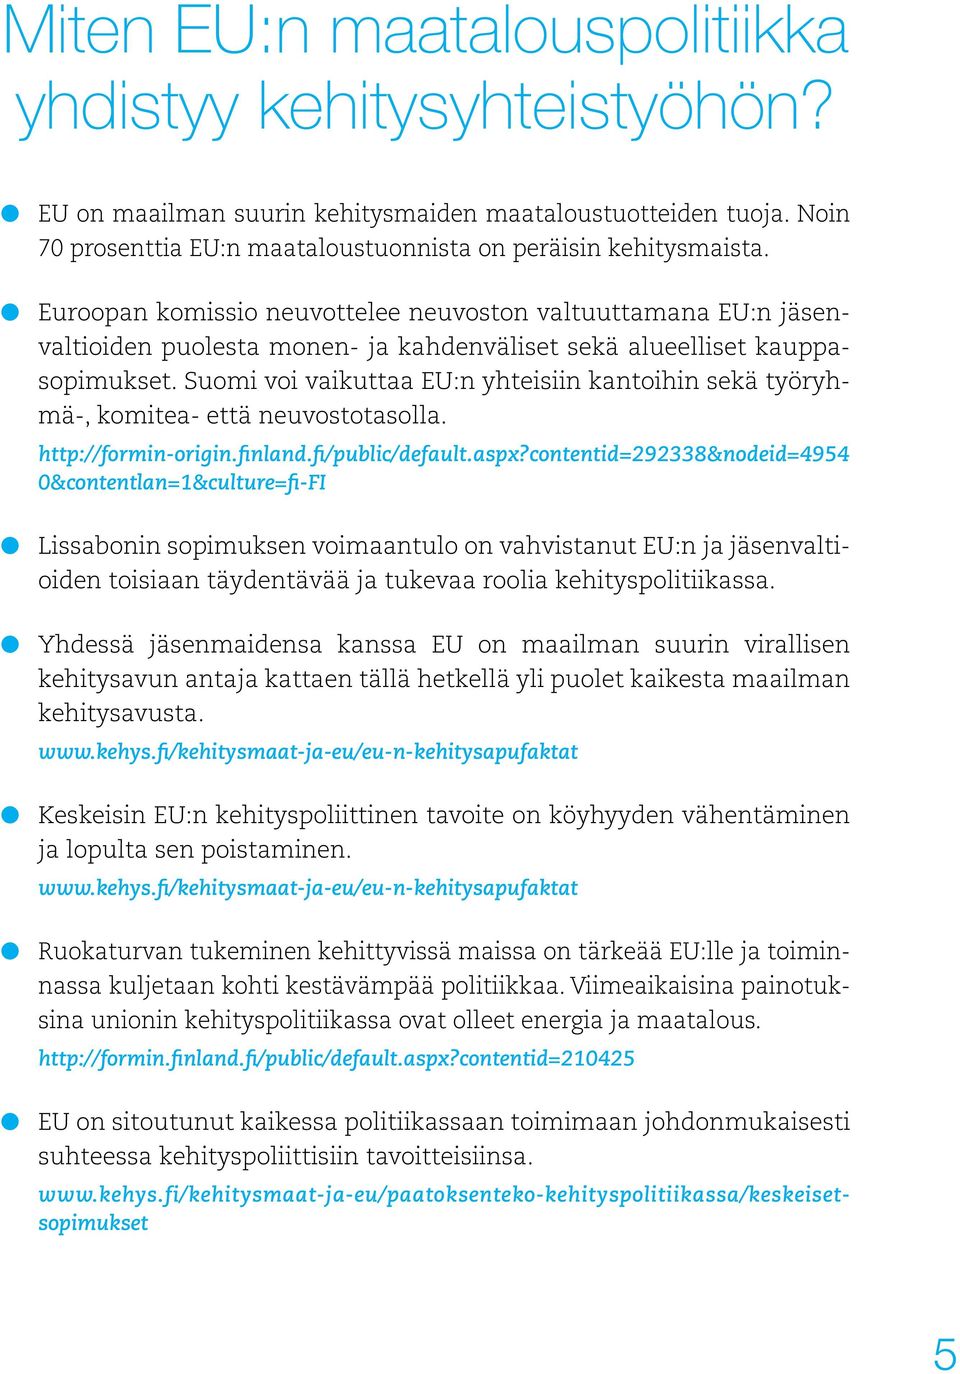 Suomi voi vaikuttaa EU:n yhteisiin kantoihin sekä työryhmä-, komitea- että neuvostotasolla. http://formin-origin.finland.fi/public/default.aspx?